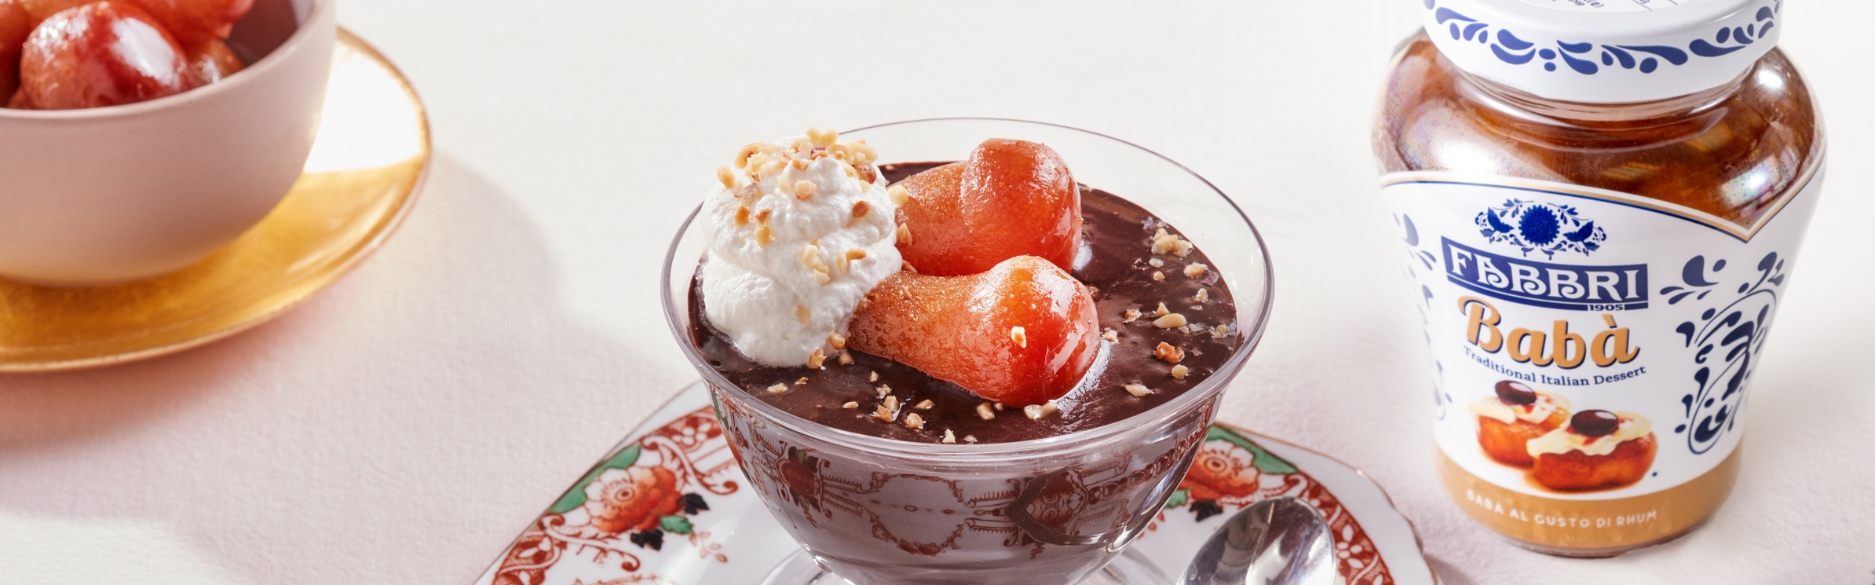 Babà Fabbri al gusto di rhum con crema al cioccolato: una bomba di gusto per rendere l’anno nuovo ancora più dolce.